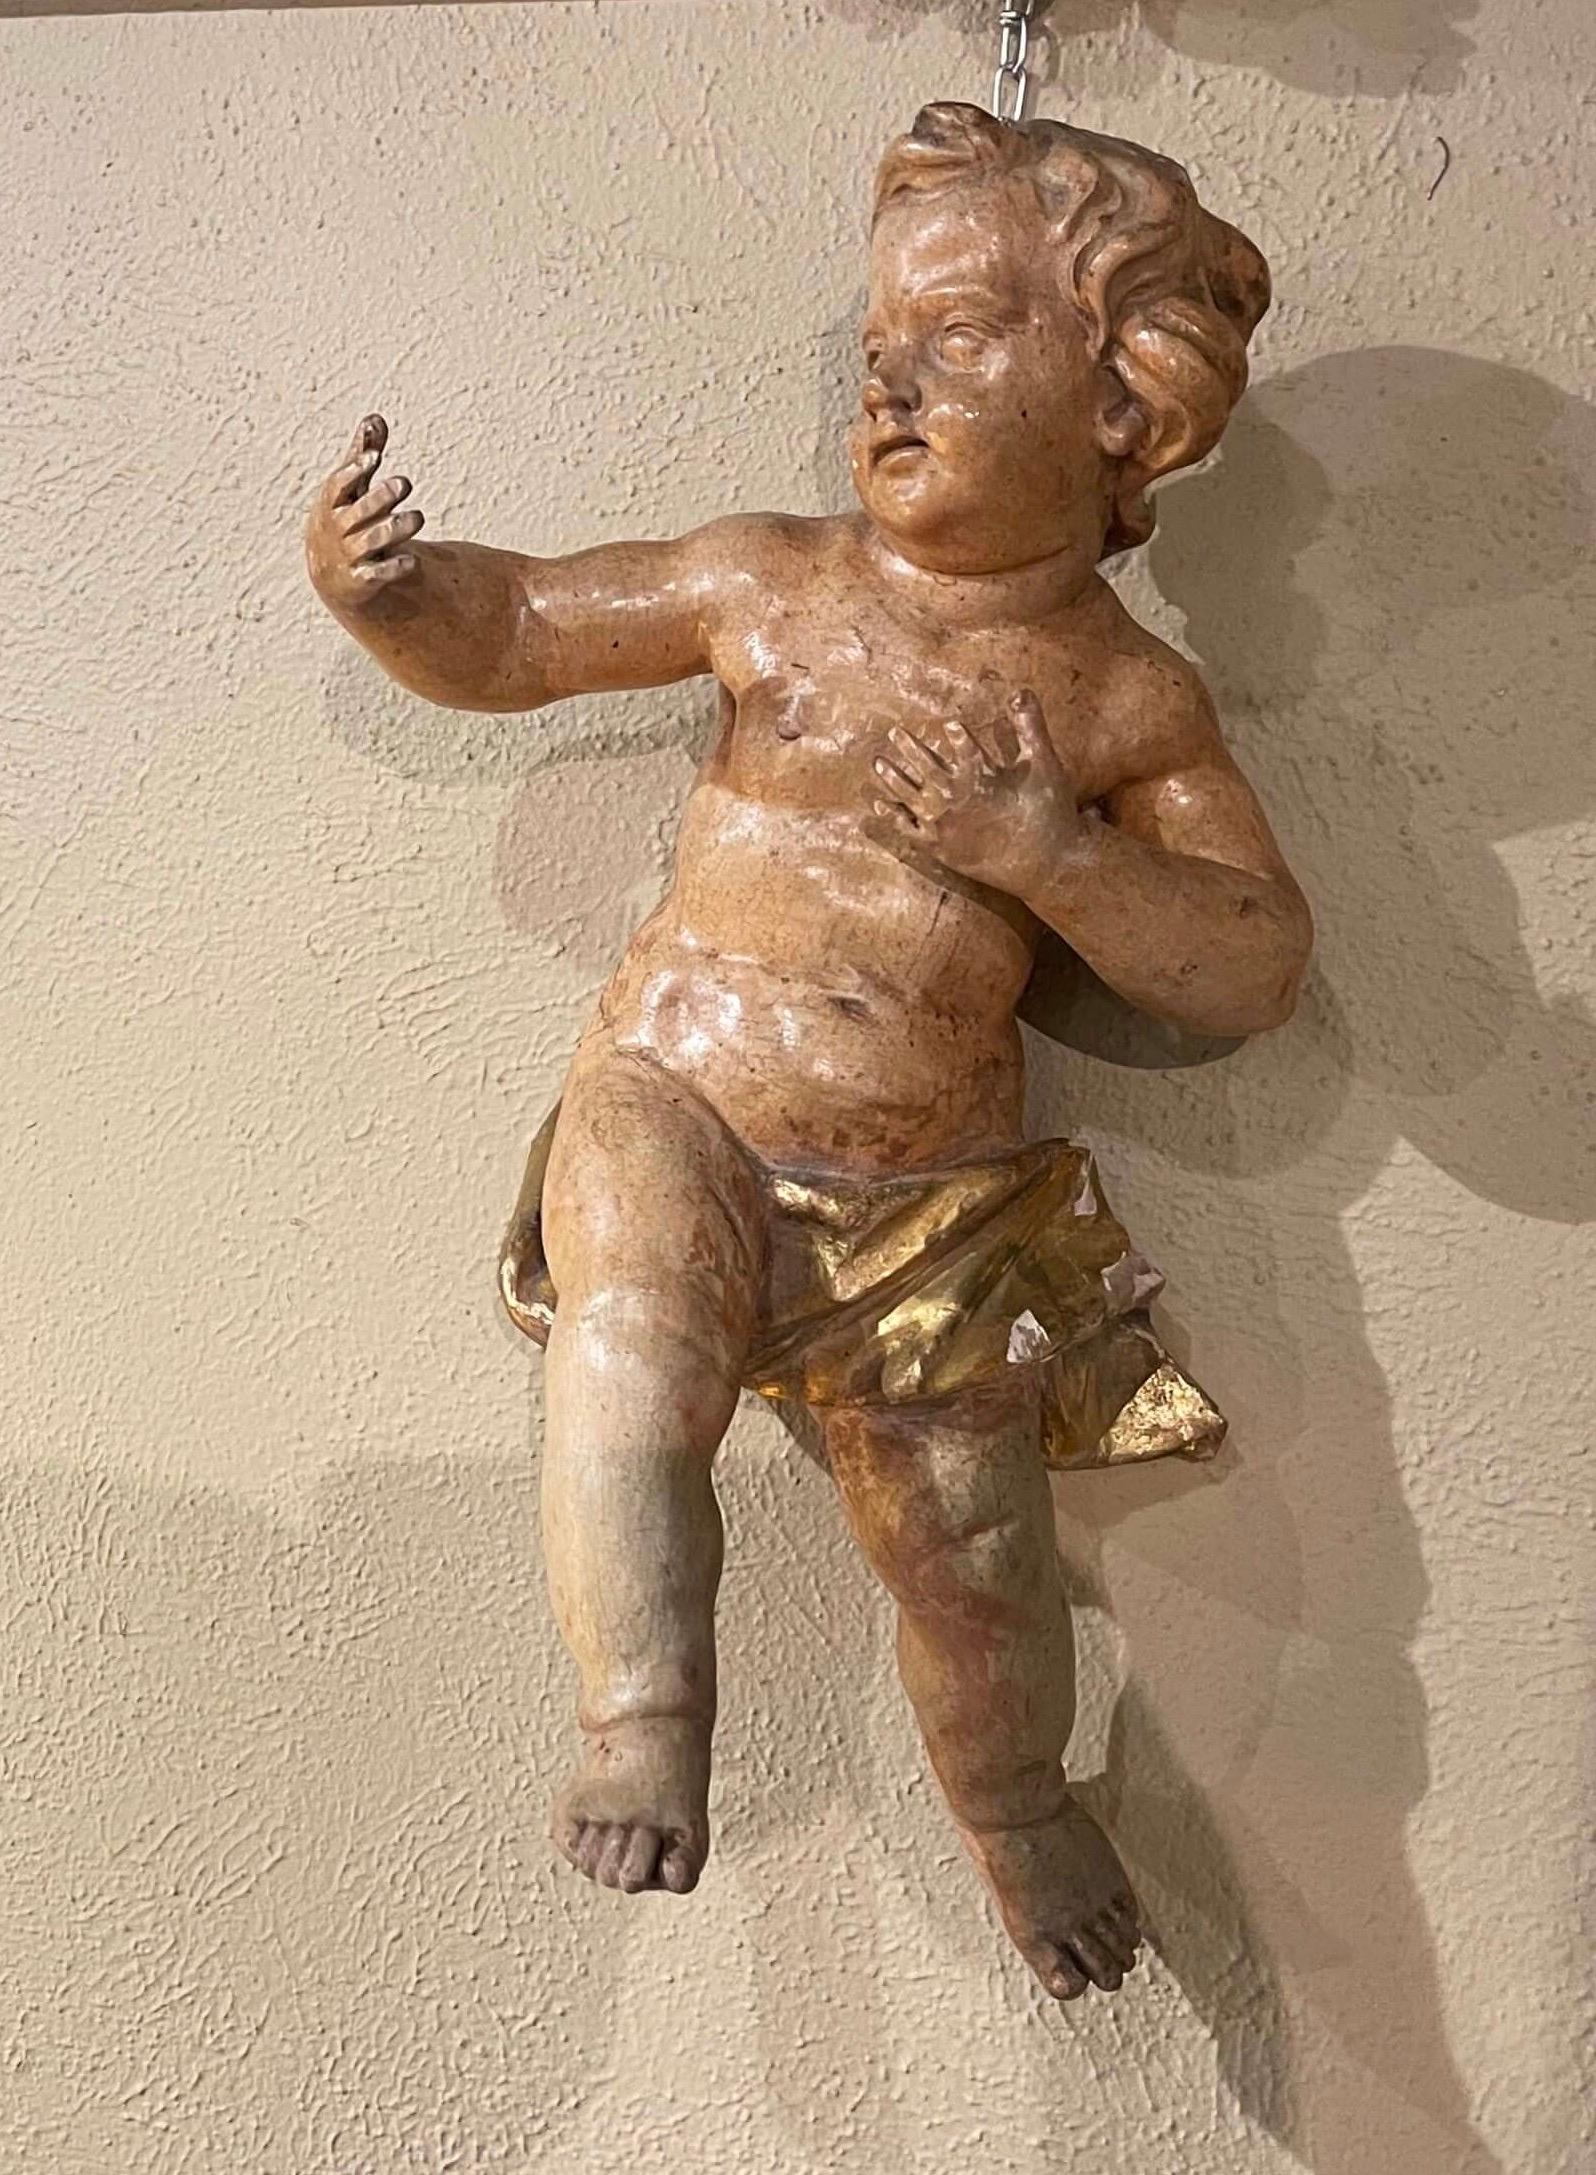 Ce chérubin antique a été fabriqué en Italie, vers 1780. La sculpture de putti peinte à la main présente sa polychromie originale et sa finition à la feuille d'or pour un résultat luxueux. Le chérubin sculpté à la main est expressif dans ses